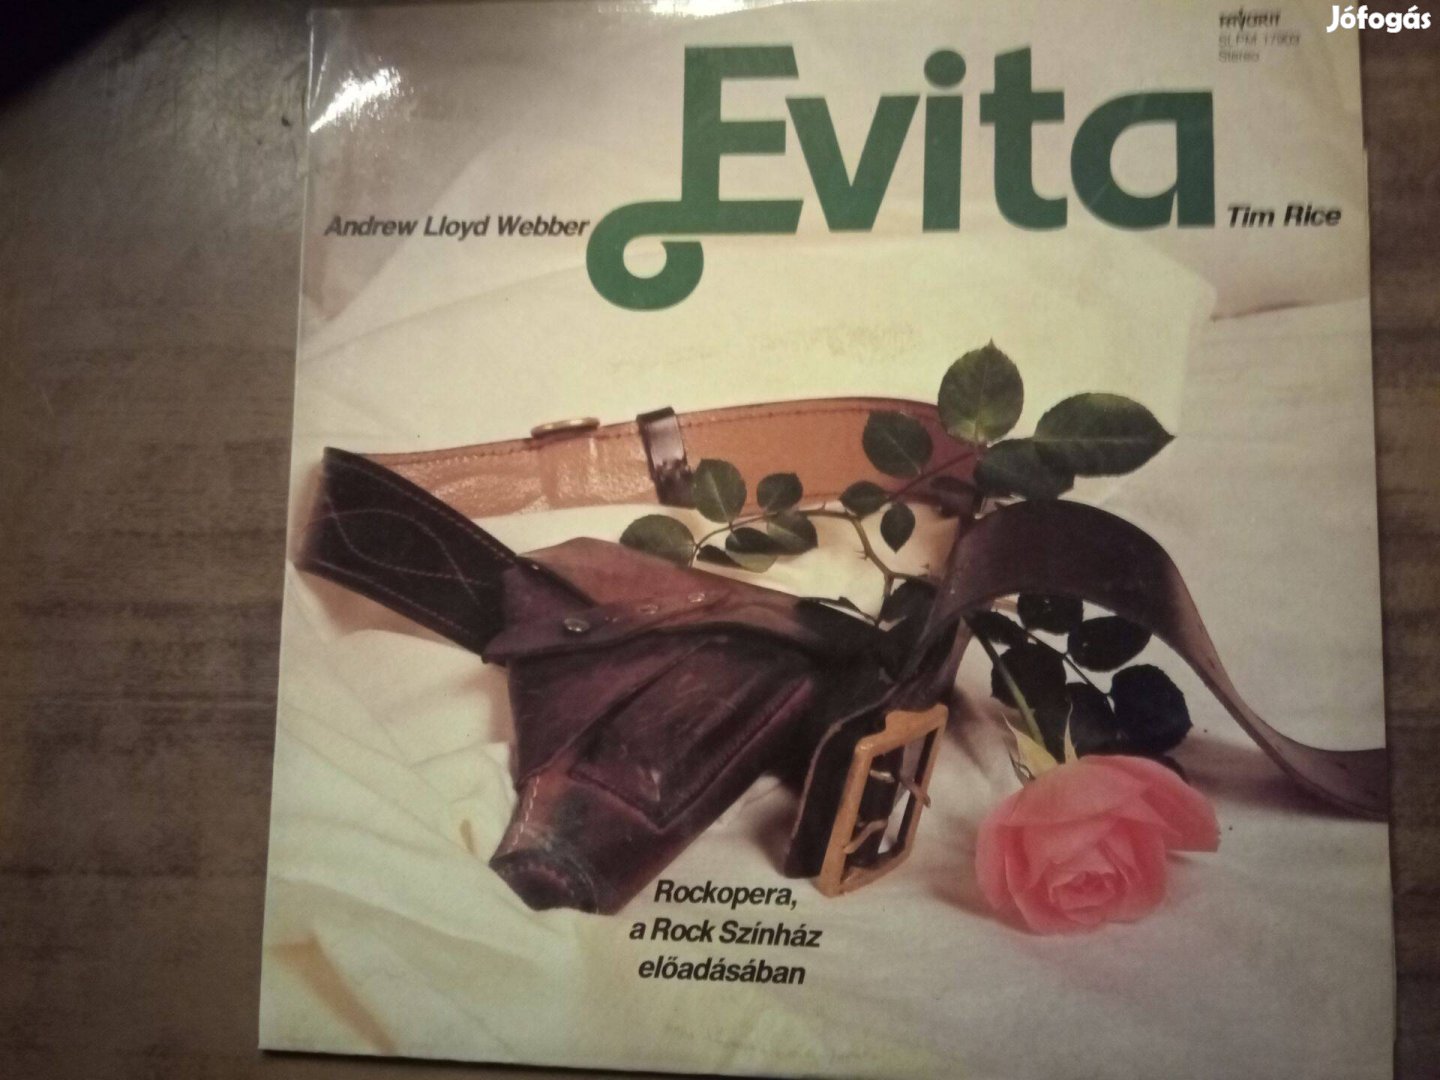 Andrew Lloyd Webber - Evita - bakelit nagylemez